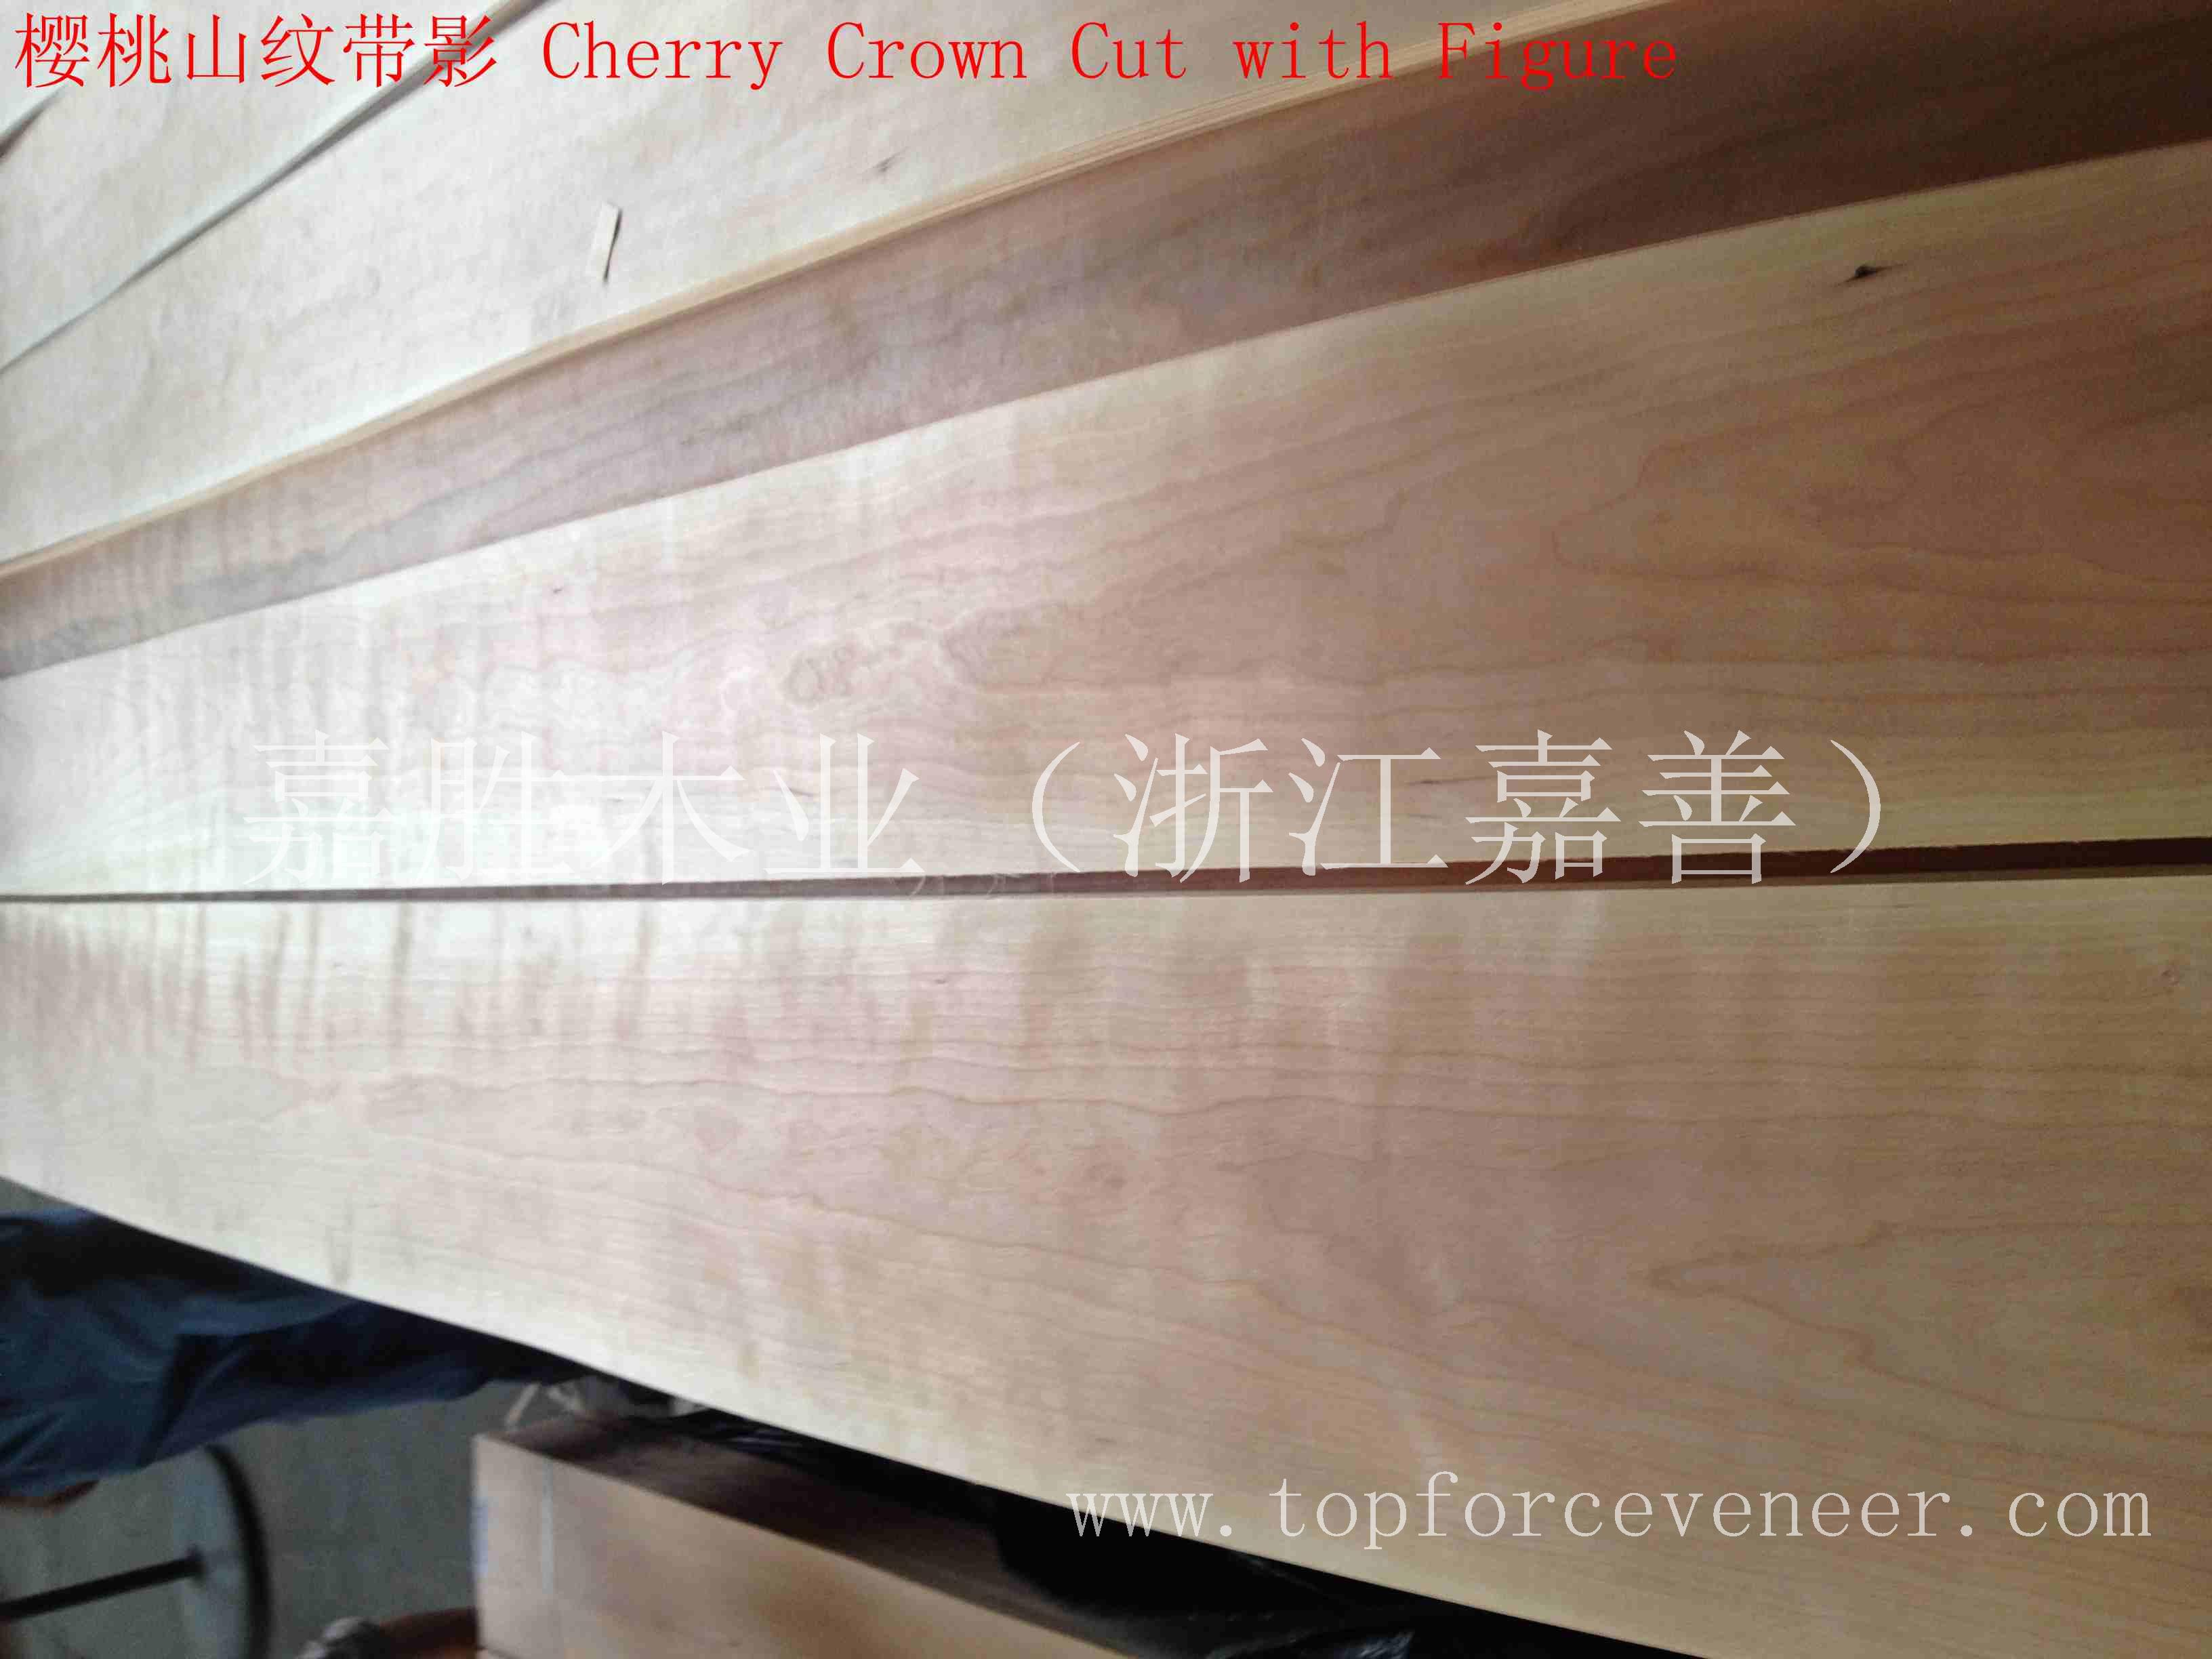 上海美国樱桃原木天然木皮平皮薄皮家具皮门料-ShangHai American Black Cherry Veneer Logs Natural Veneee